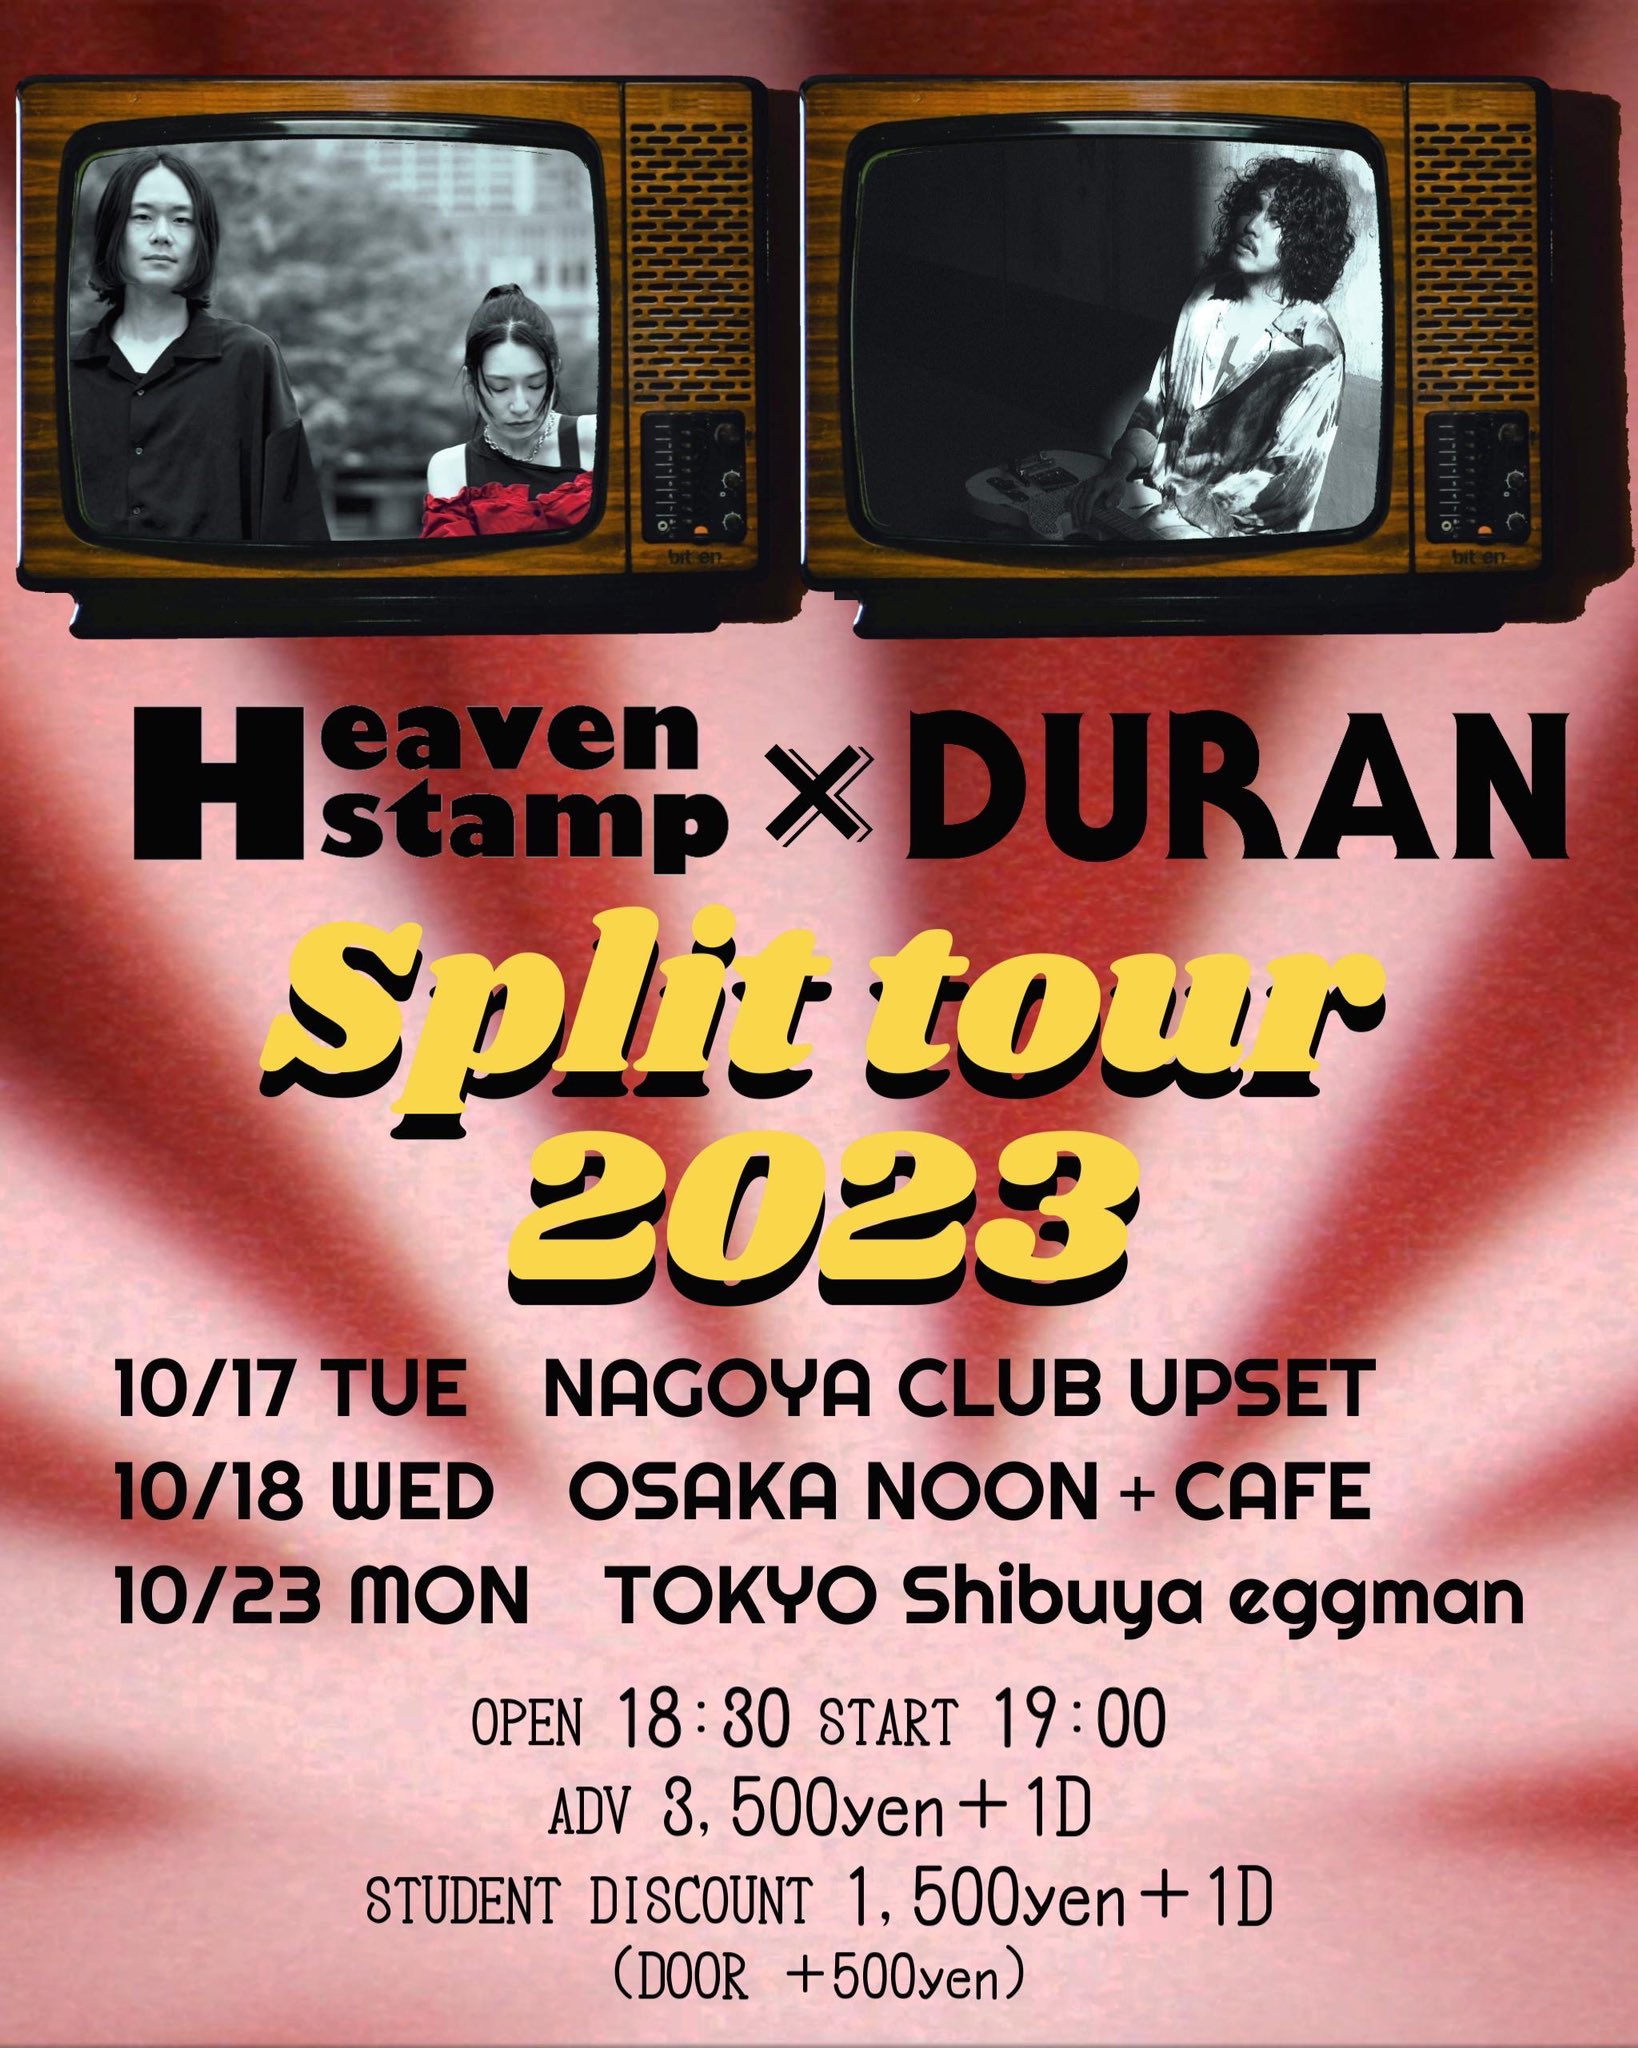 Heavenstamp × DURAN Split tour 2023